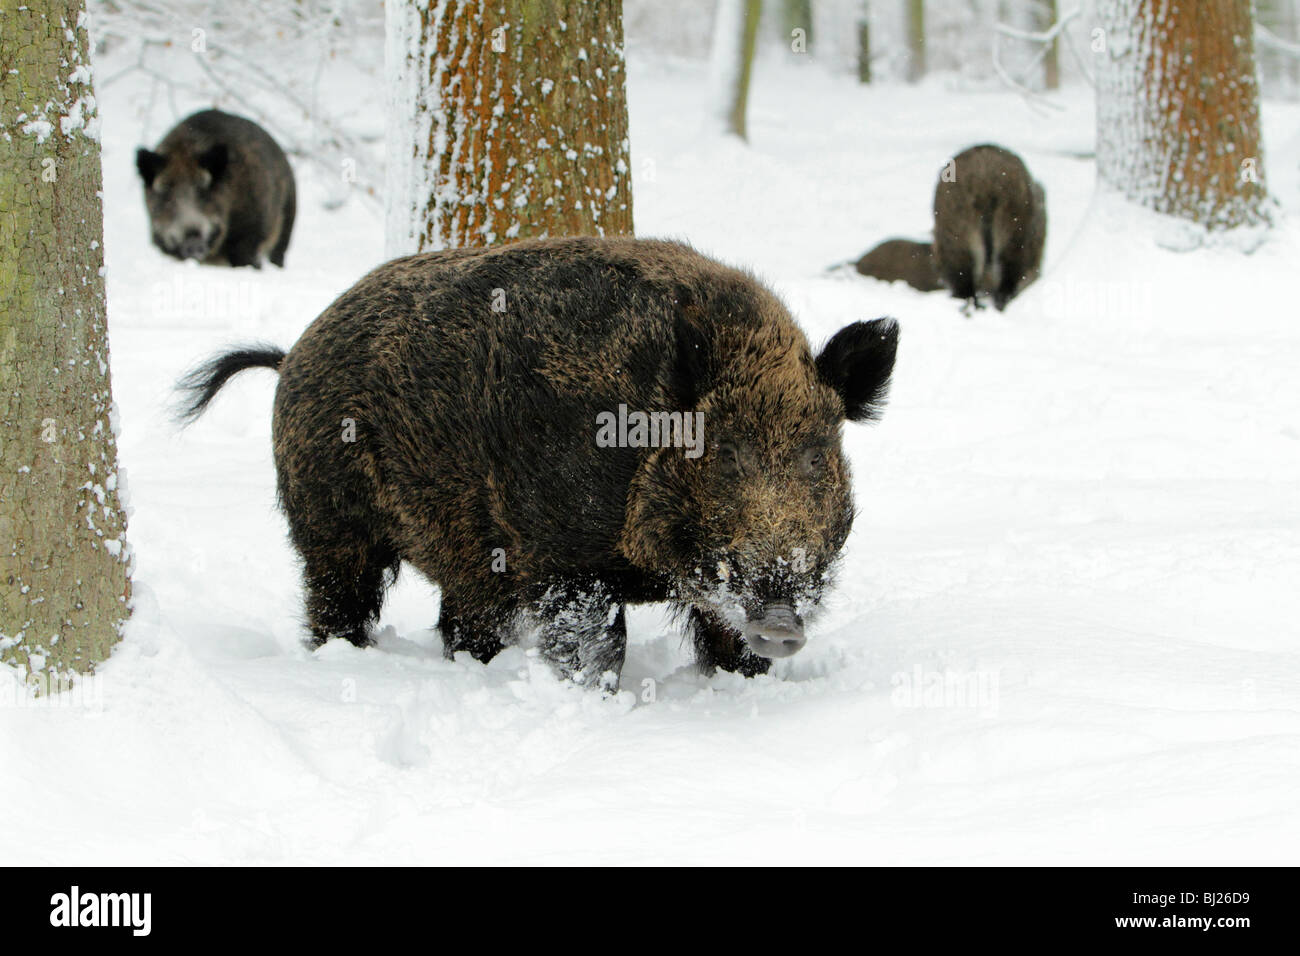 El jabalí, Sus scrofa, rebaño forrajeando en bosques cubiertos de nieve, Alemania Foto de stock